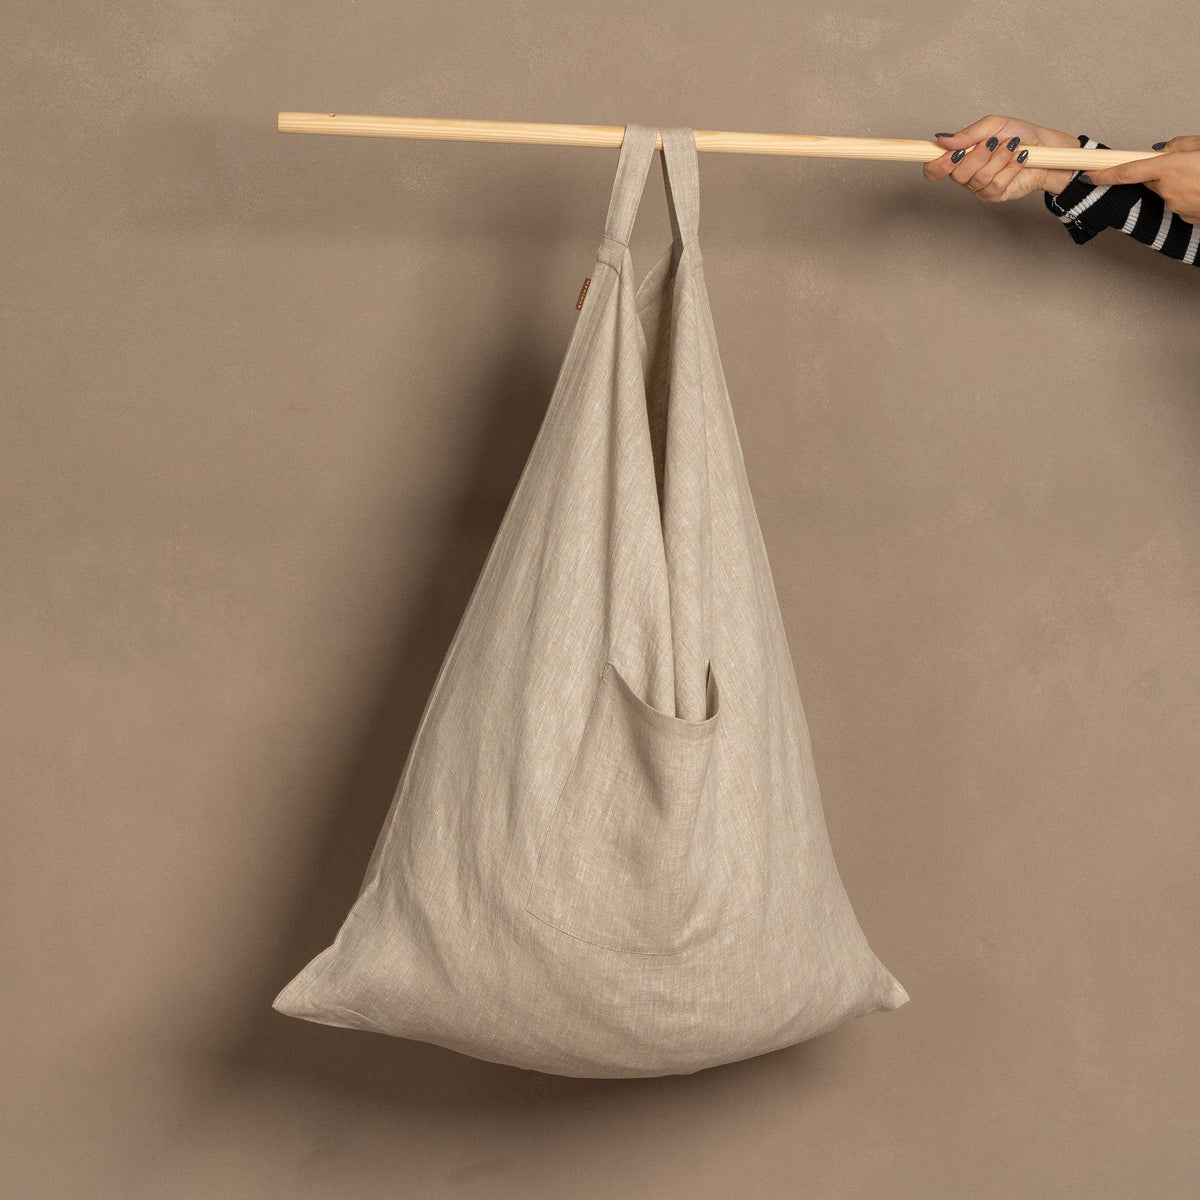 MENIQUE 100% Linen Hanging Laundry Bag